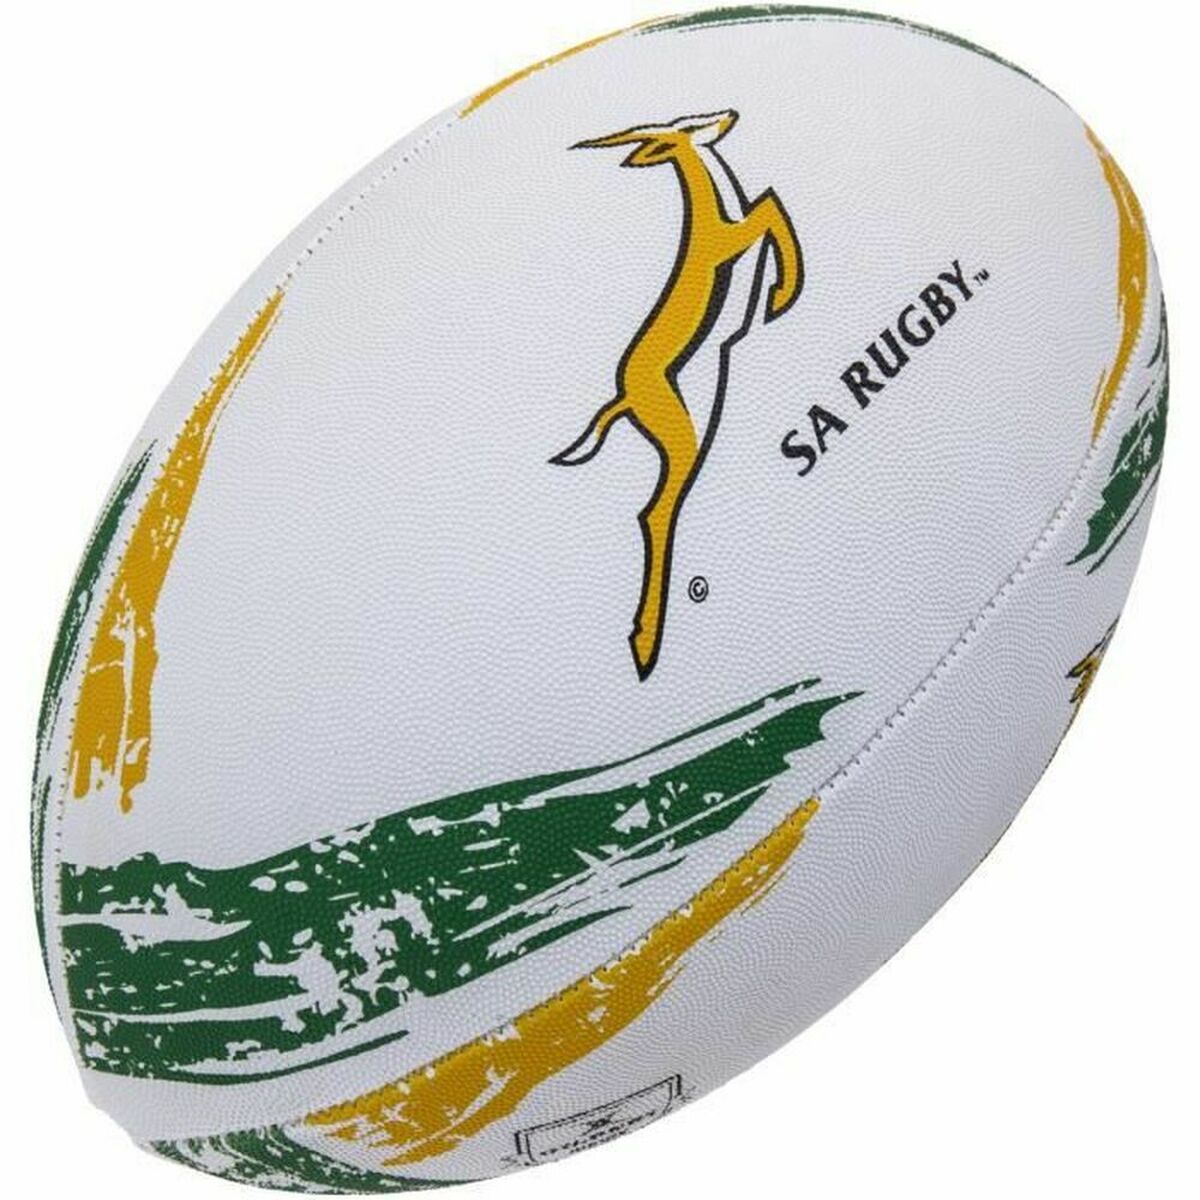 Pallone da Rugby Gilbert GIL027-SA 5 Multicolore